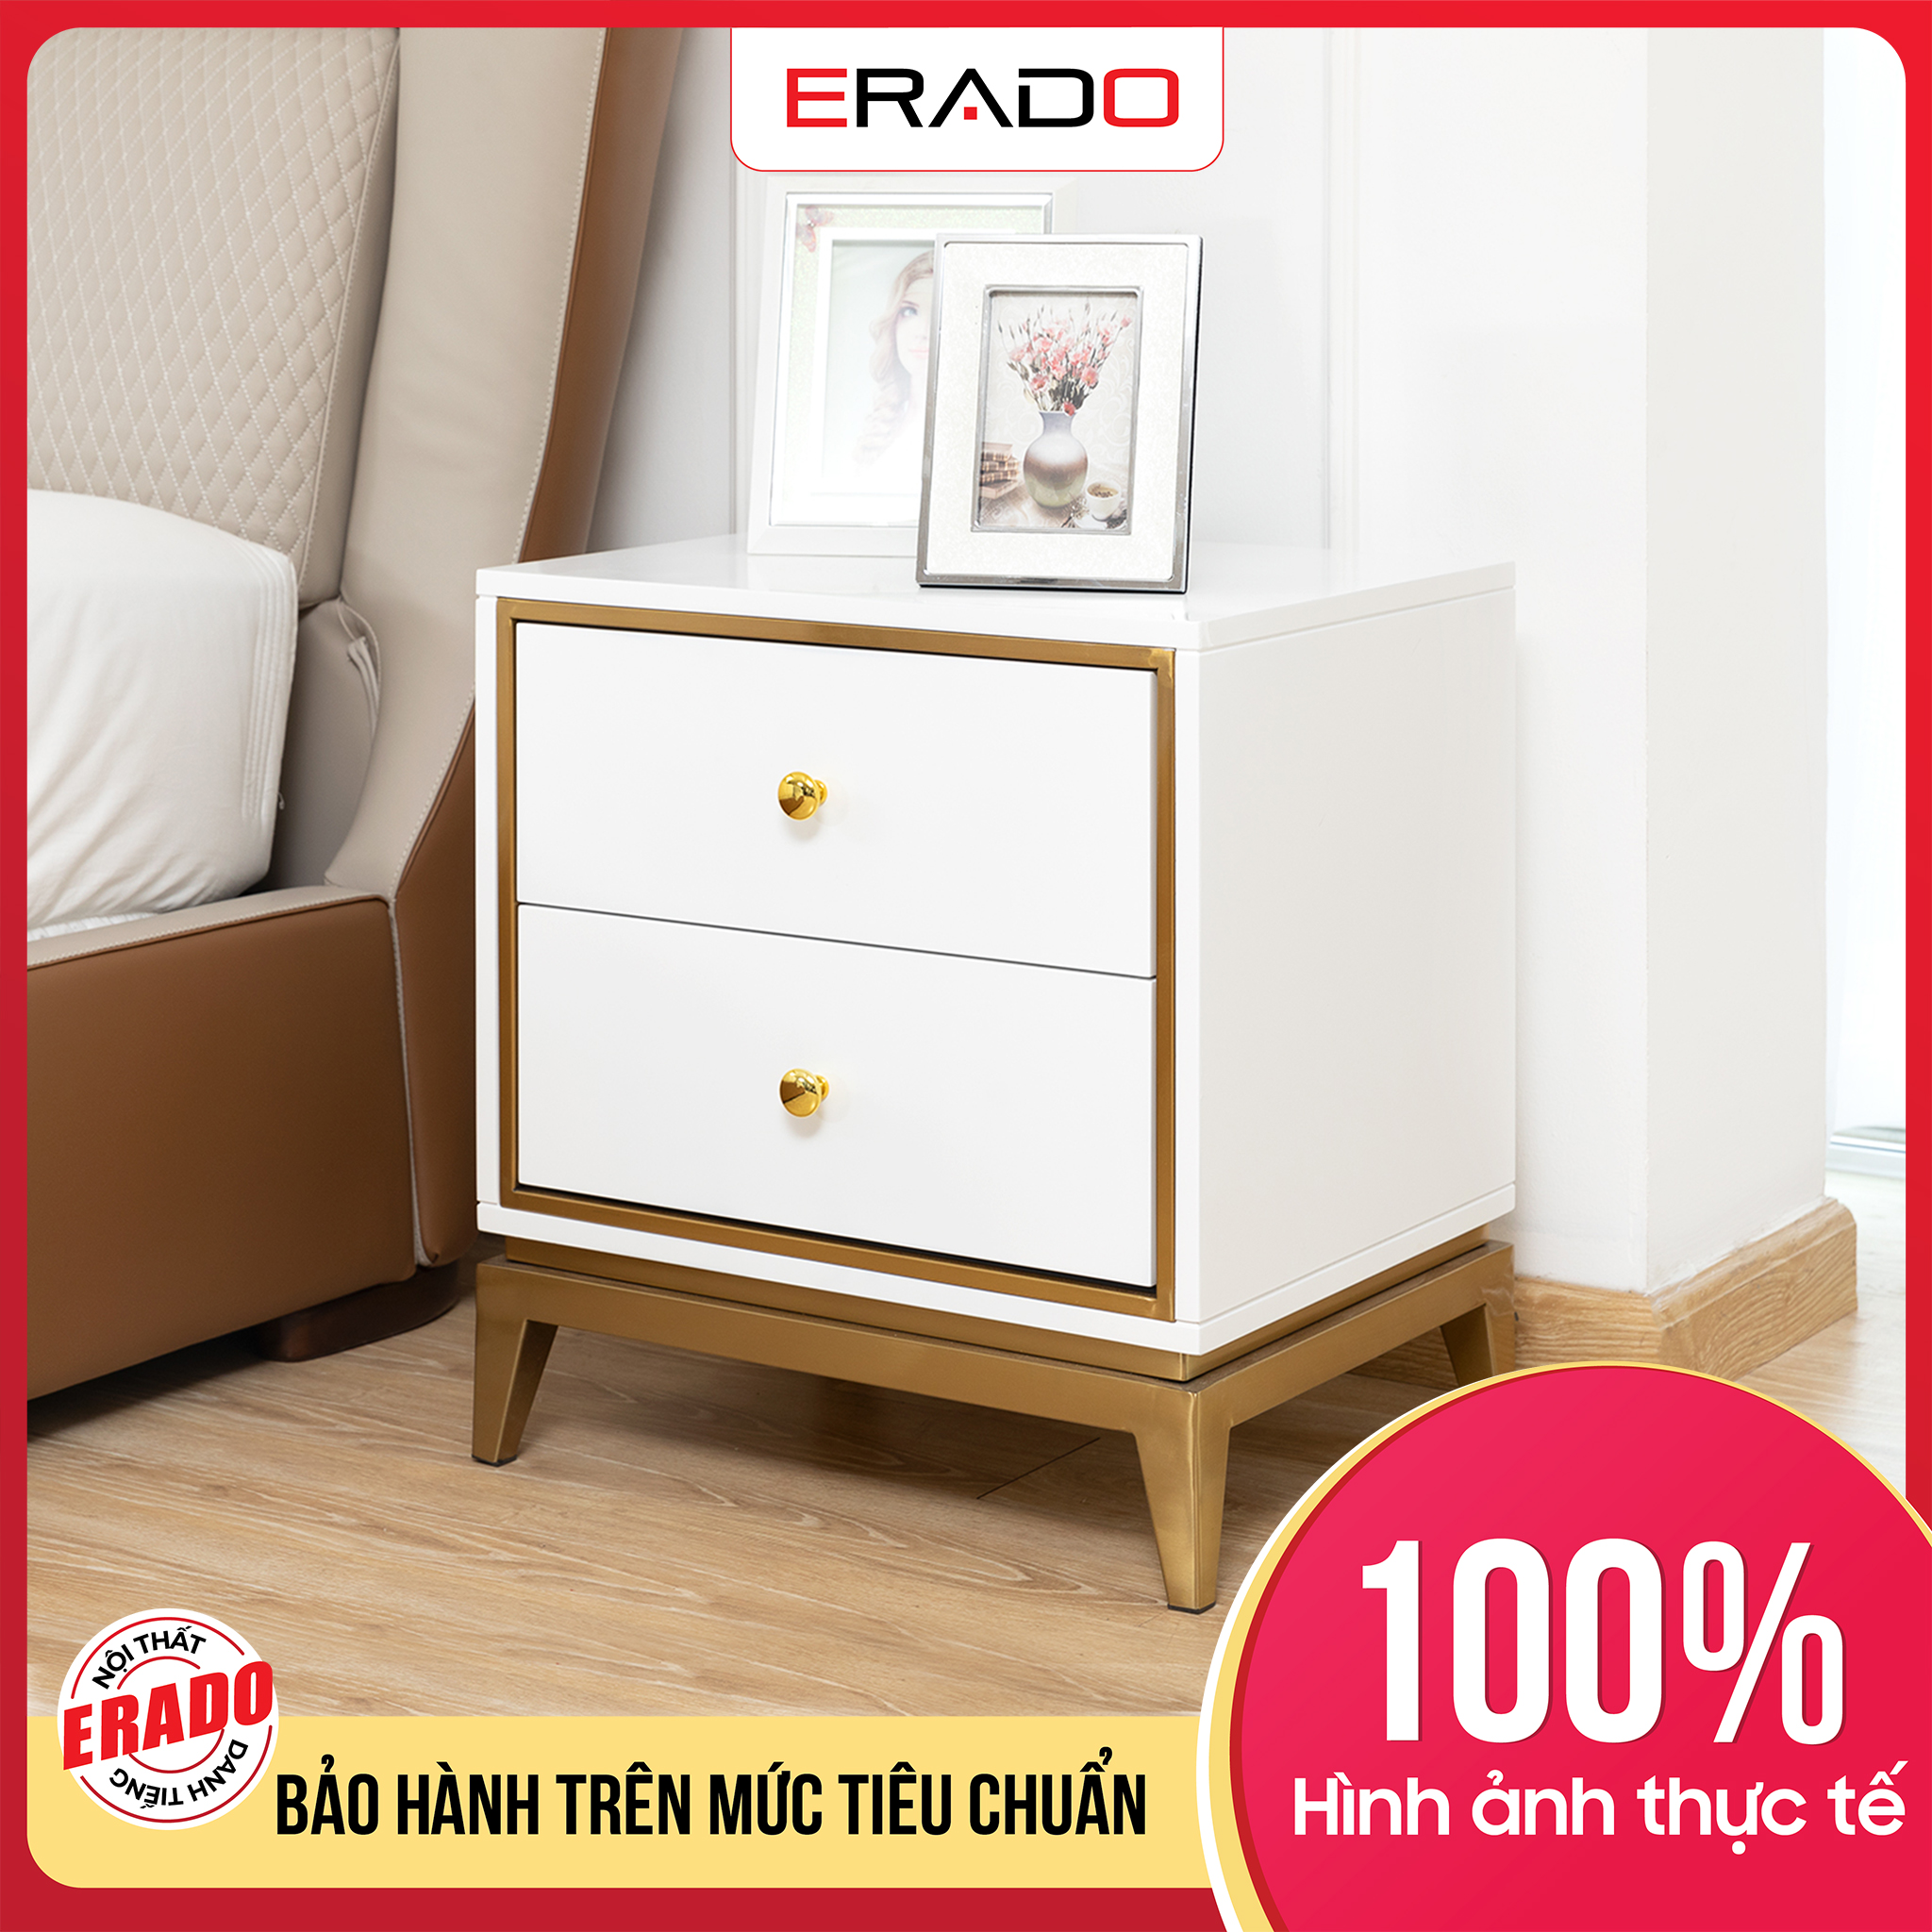 8591 high-end imported wood frame Erado bedside table